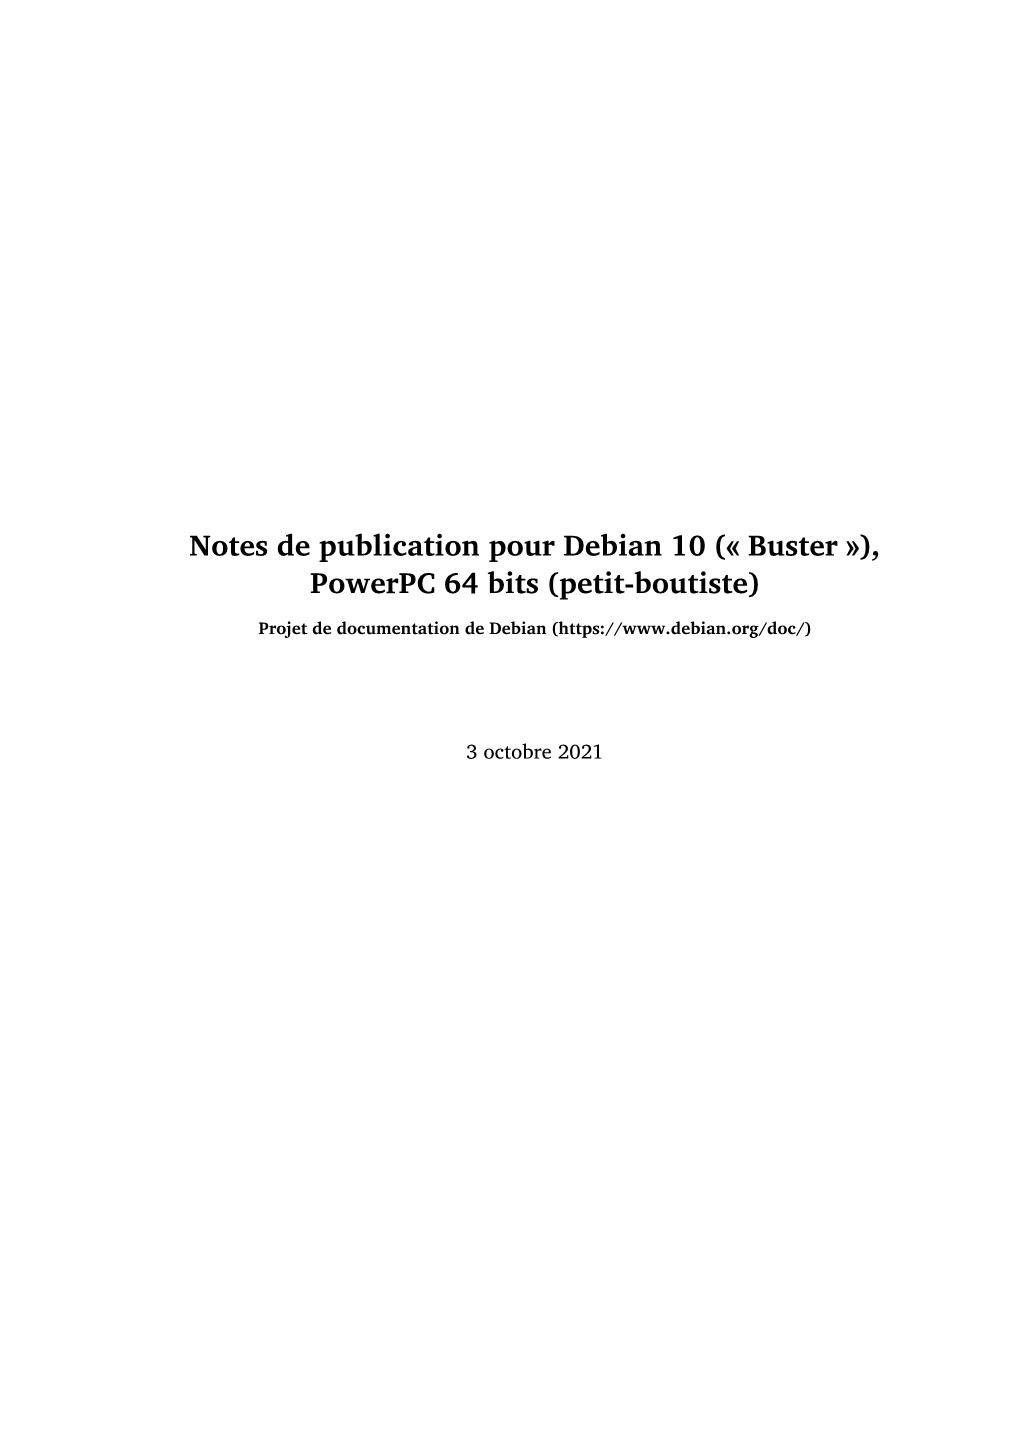 Notes De Publication Pour Debian 10 (« Buster »), Powerpc 64 Bits (Petit-Boutiste)